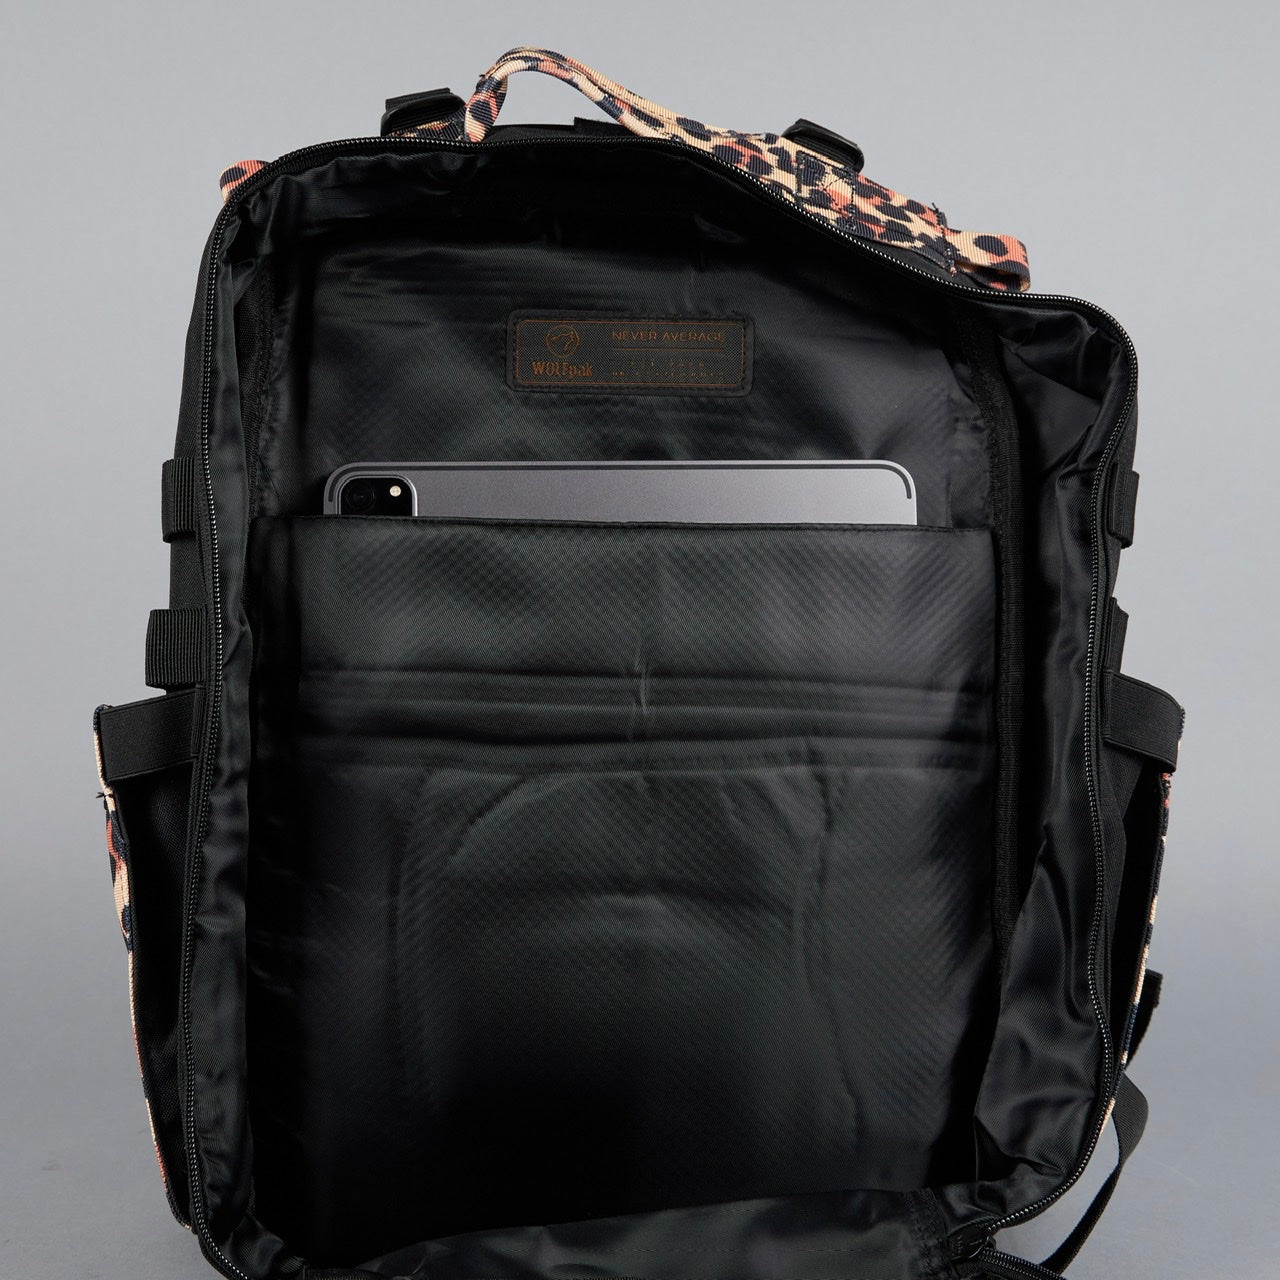 25L Backpack Alpha Black Leopard Limited Edition